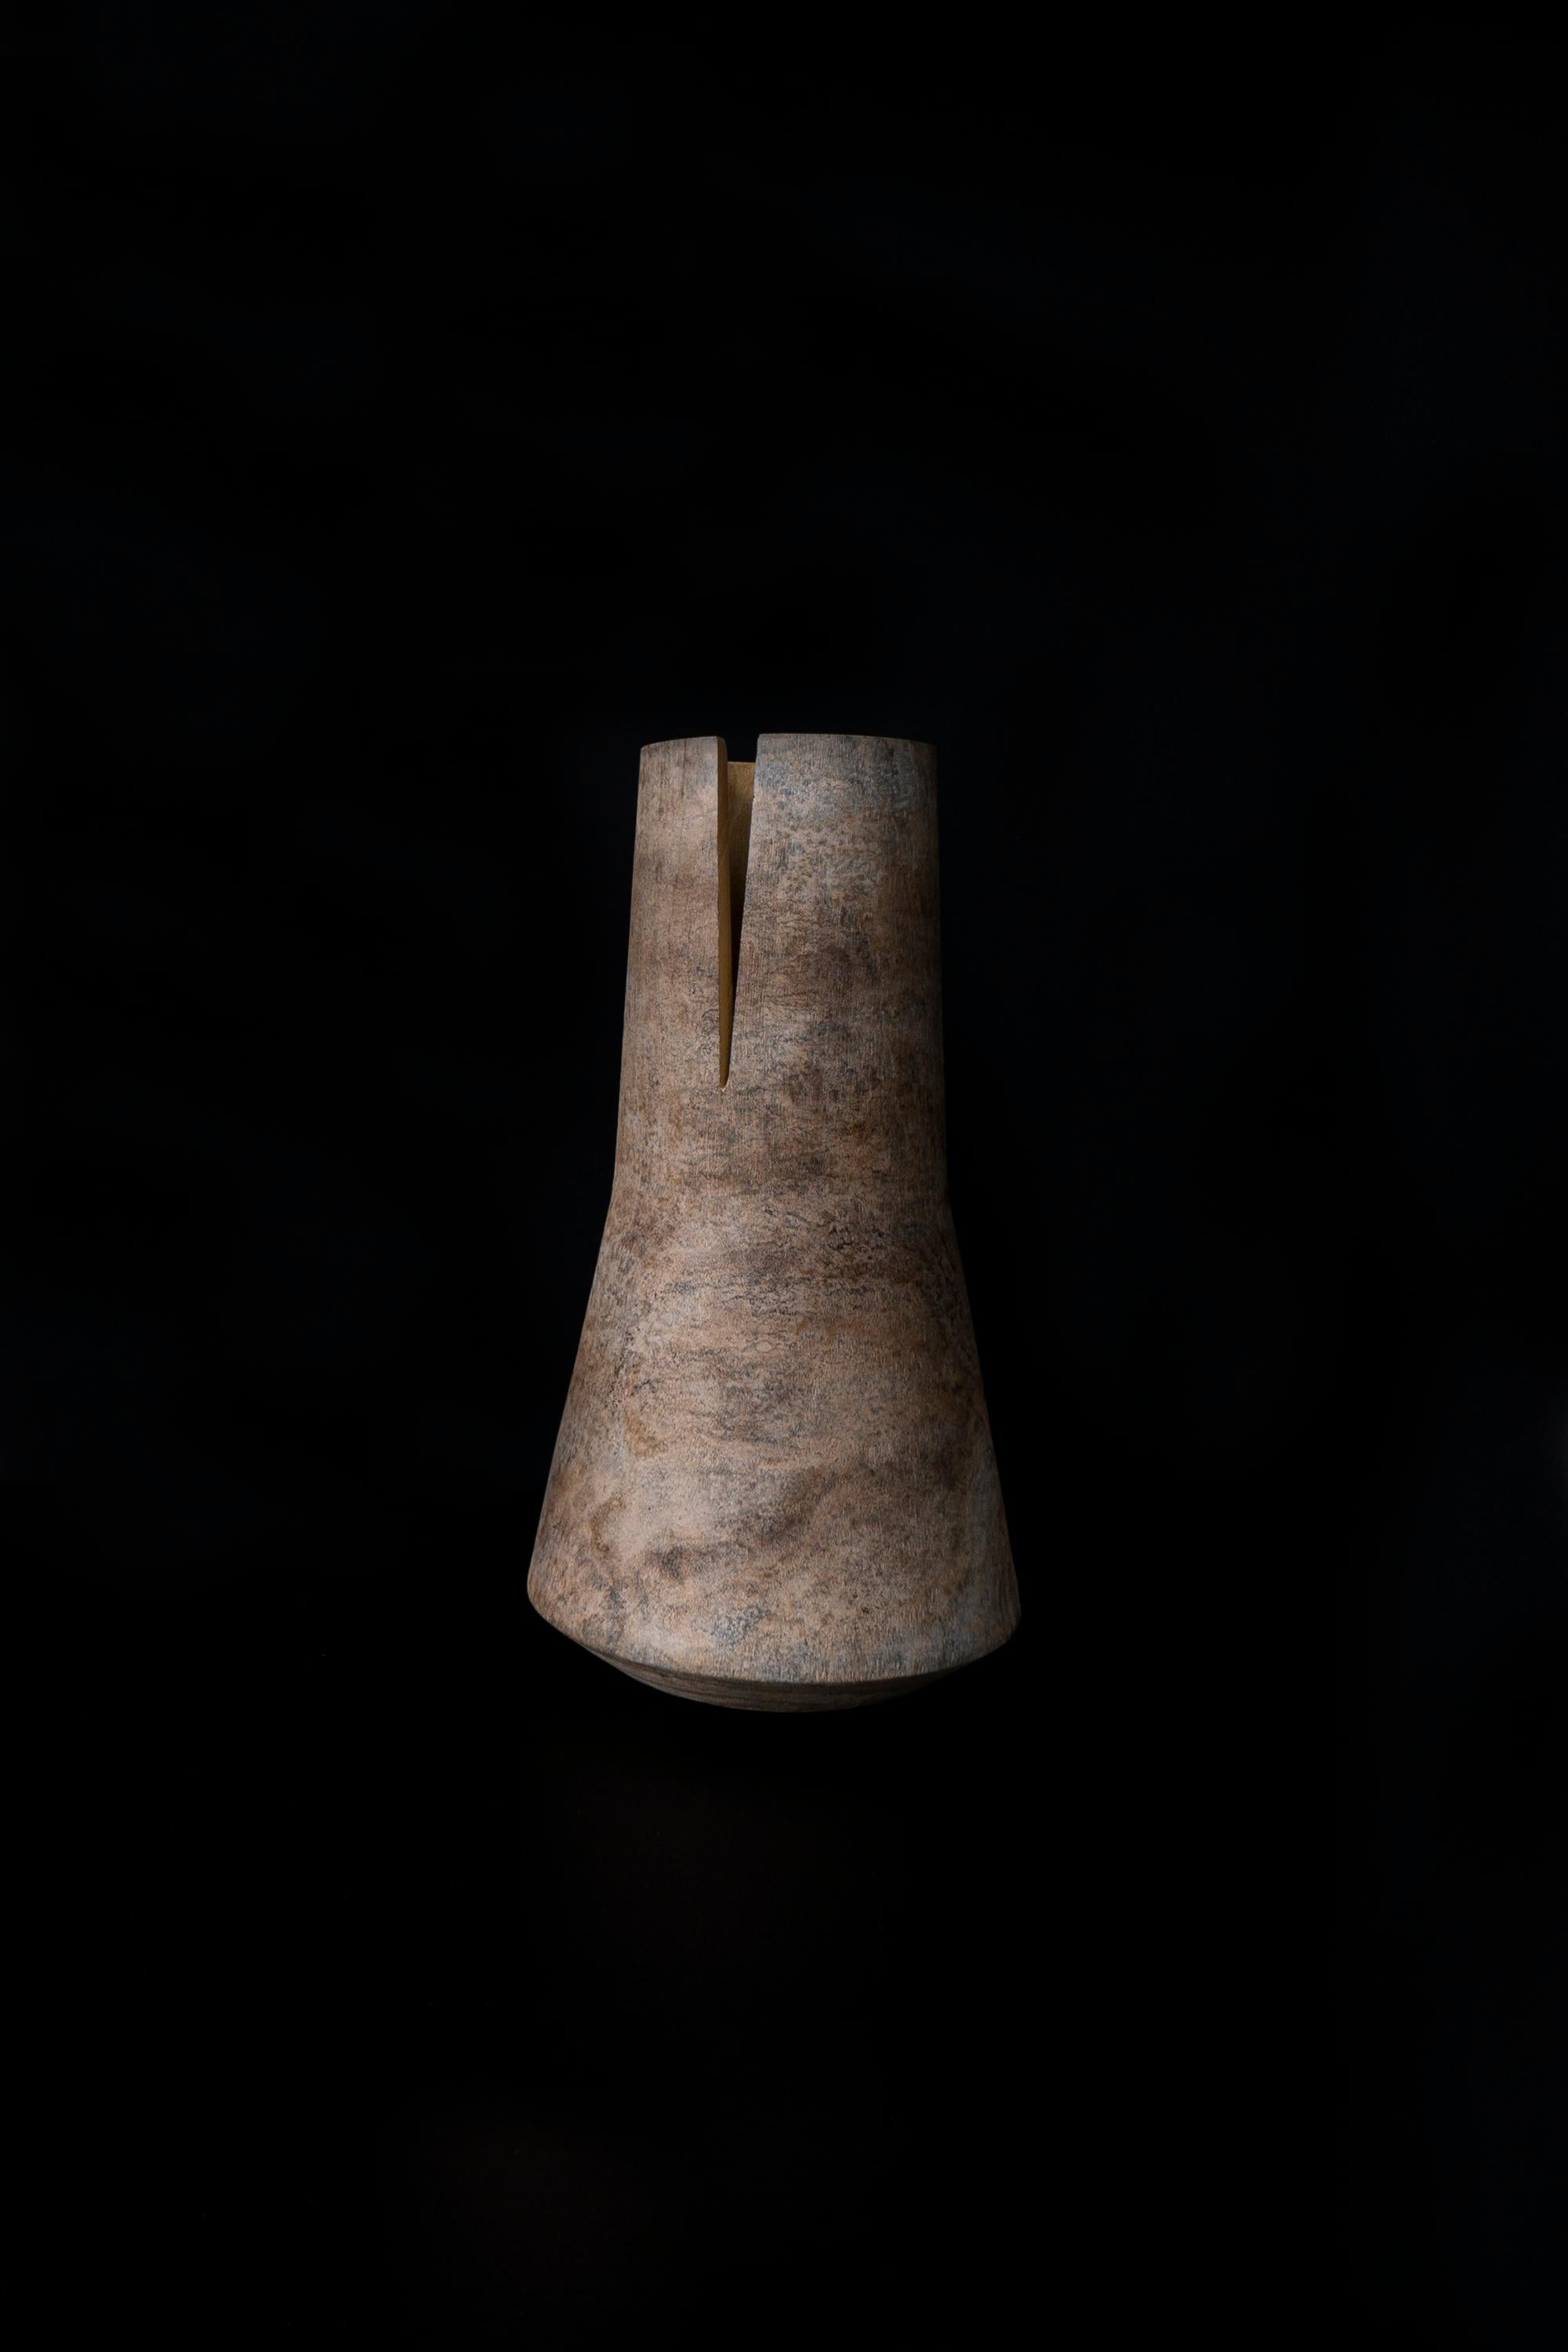 Tomahawk est un vase essentiel mais beau, réalisé en bois de mûrier teinté avec une finition à base d'oxyde de titane. 
La forme simple est fendue par un coup de hache qui caractérise l'image. Ce vase se décline en trois formes différentes, conçues